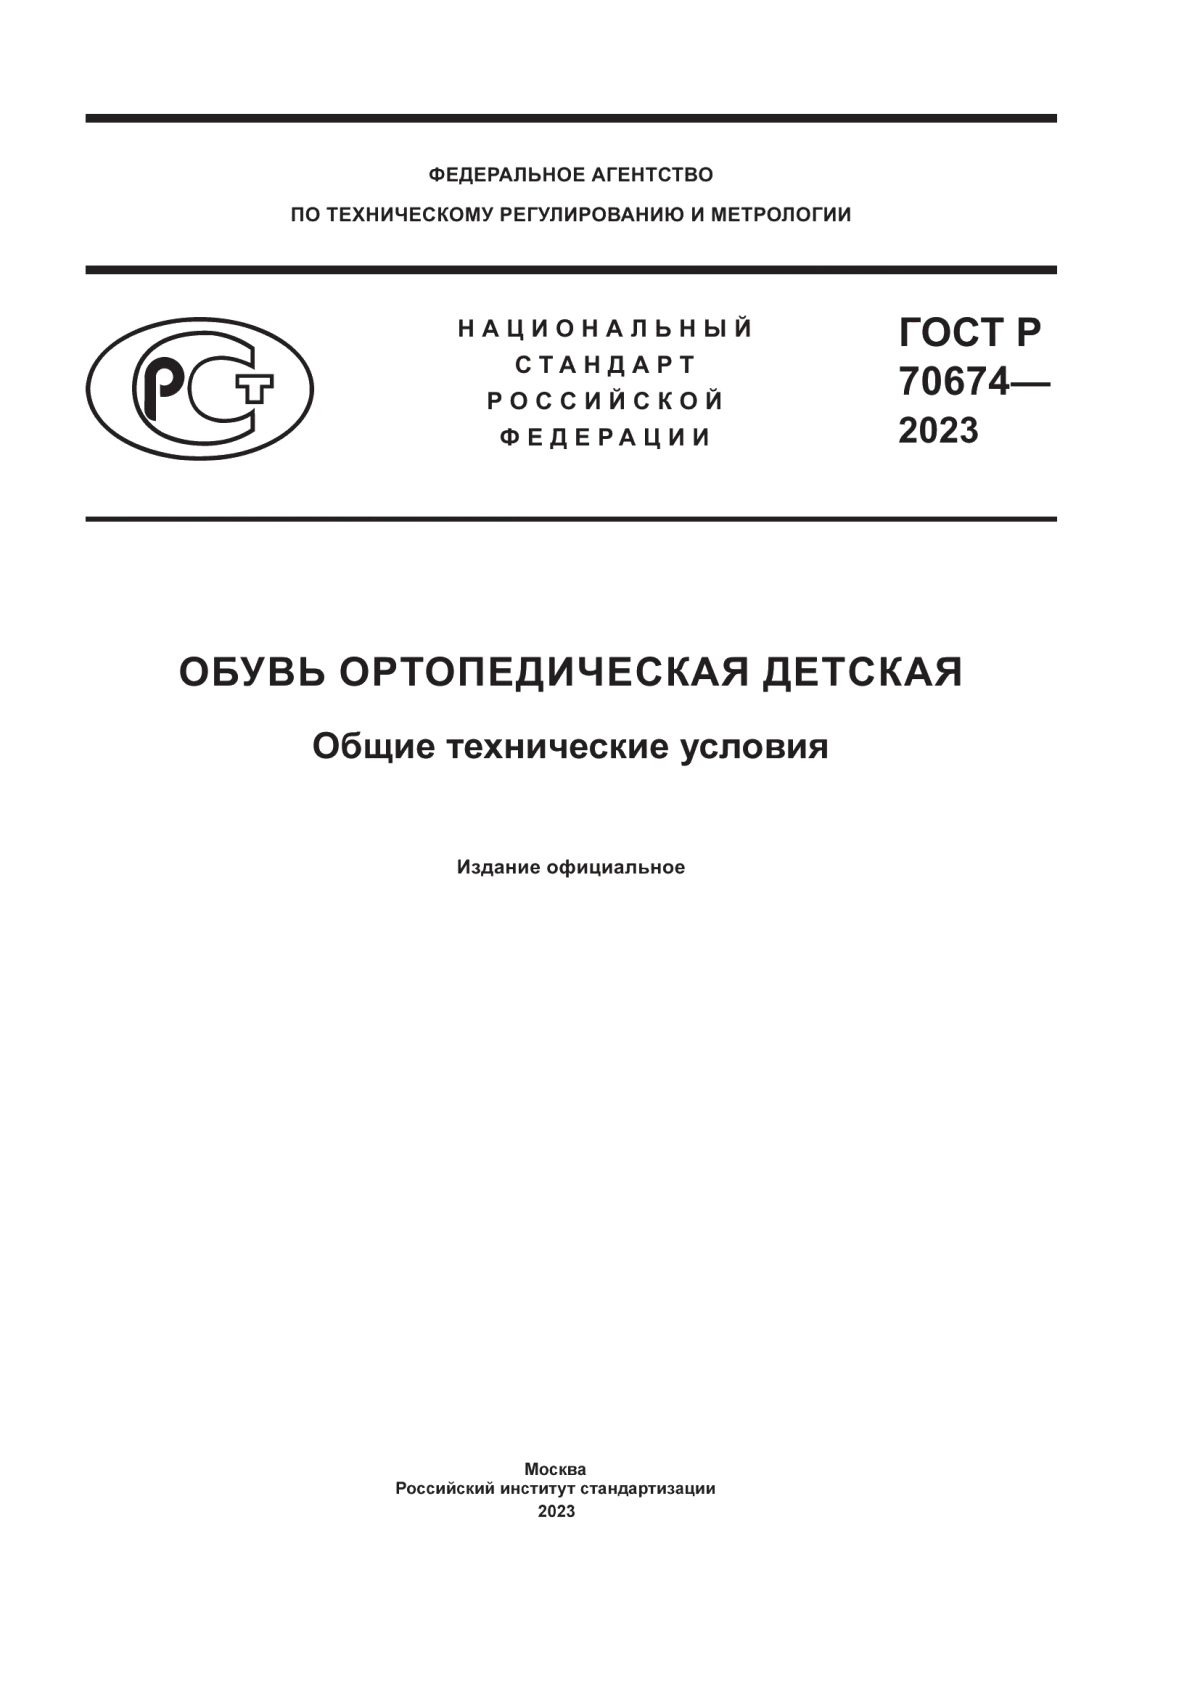 ГОСТ Р 70674-2023 Обувь ортопедическая детская. Общие технические условия